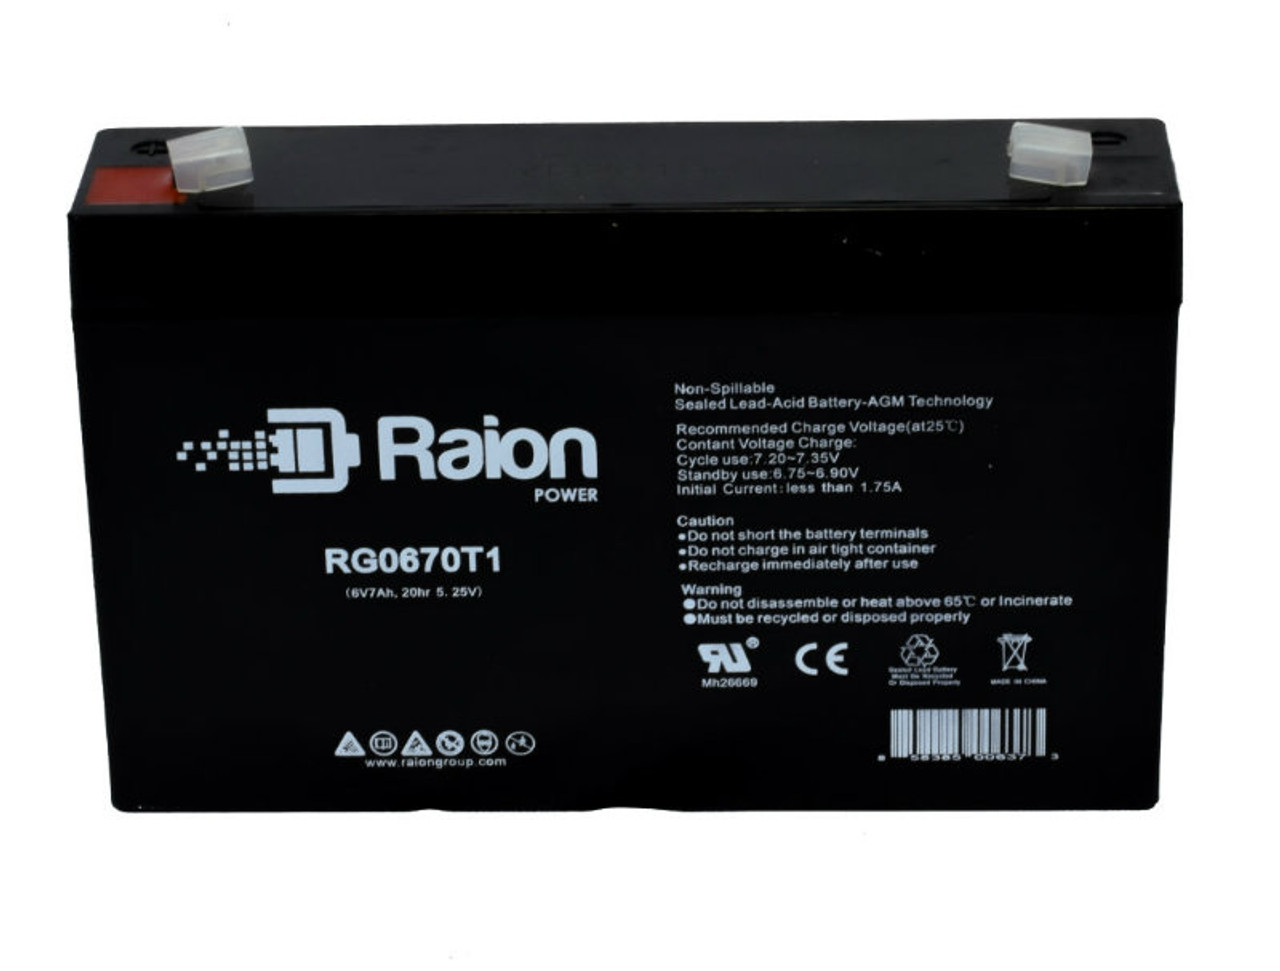 Raion Power RG0670T1 SLA Battery for Technacell EP66536 OEM Battery